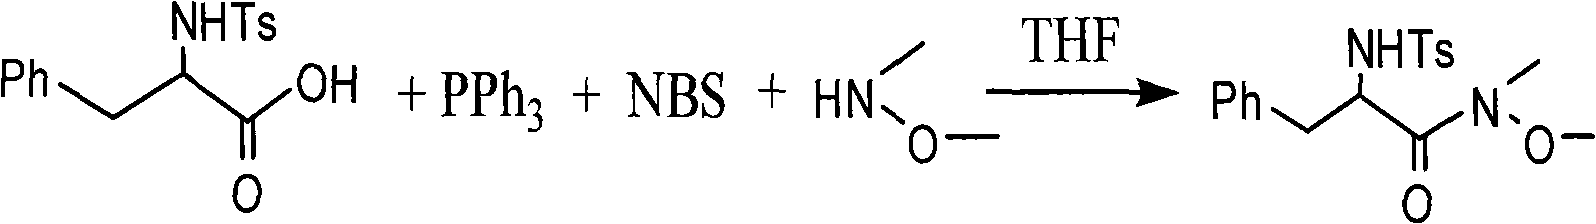 One-step method for synthesizing N-methyl-N-methoxyamide